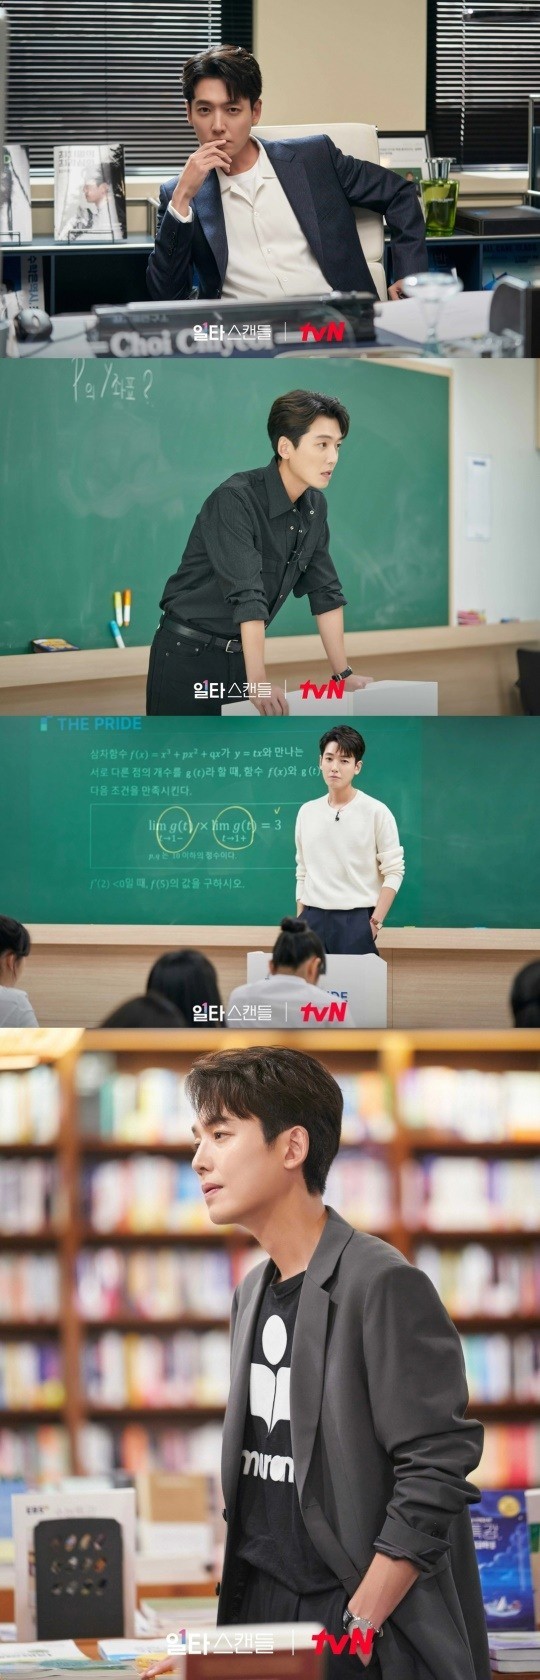 Jung Kyung Ho qua 2 phim hot hit: Đều mặc đồ trơn nhưng làm thầy giáo thì tươi tắn mỗi ngày, thủ vai bác sĩ là trầm hẳn mấy nốt - Ảnh 1.